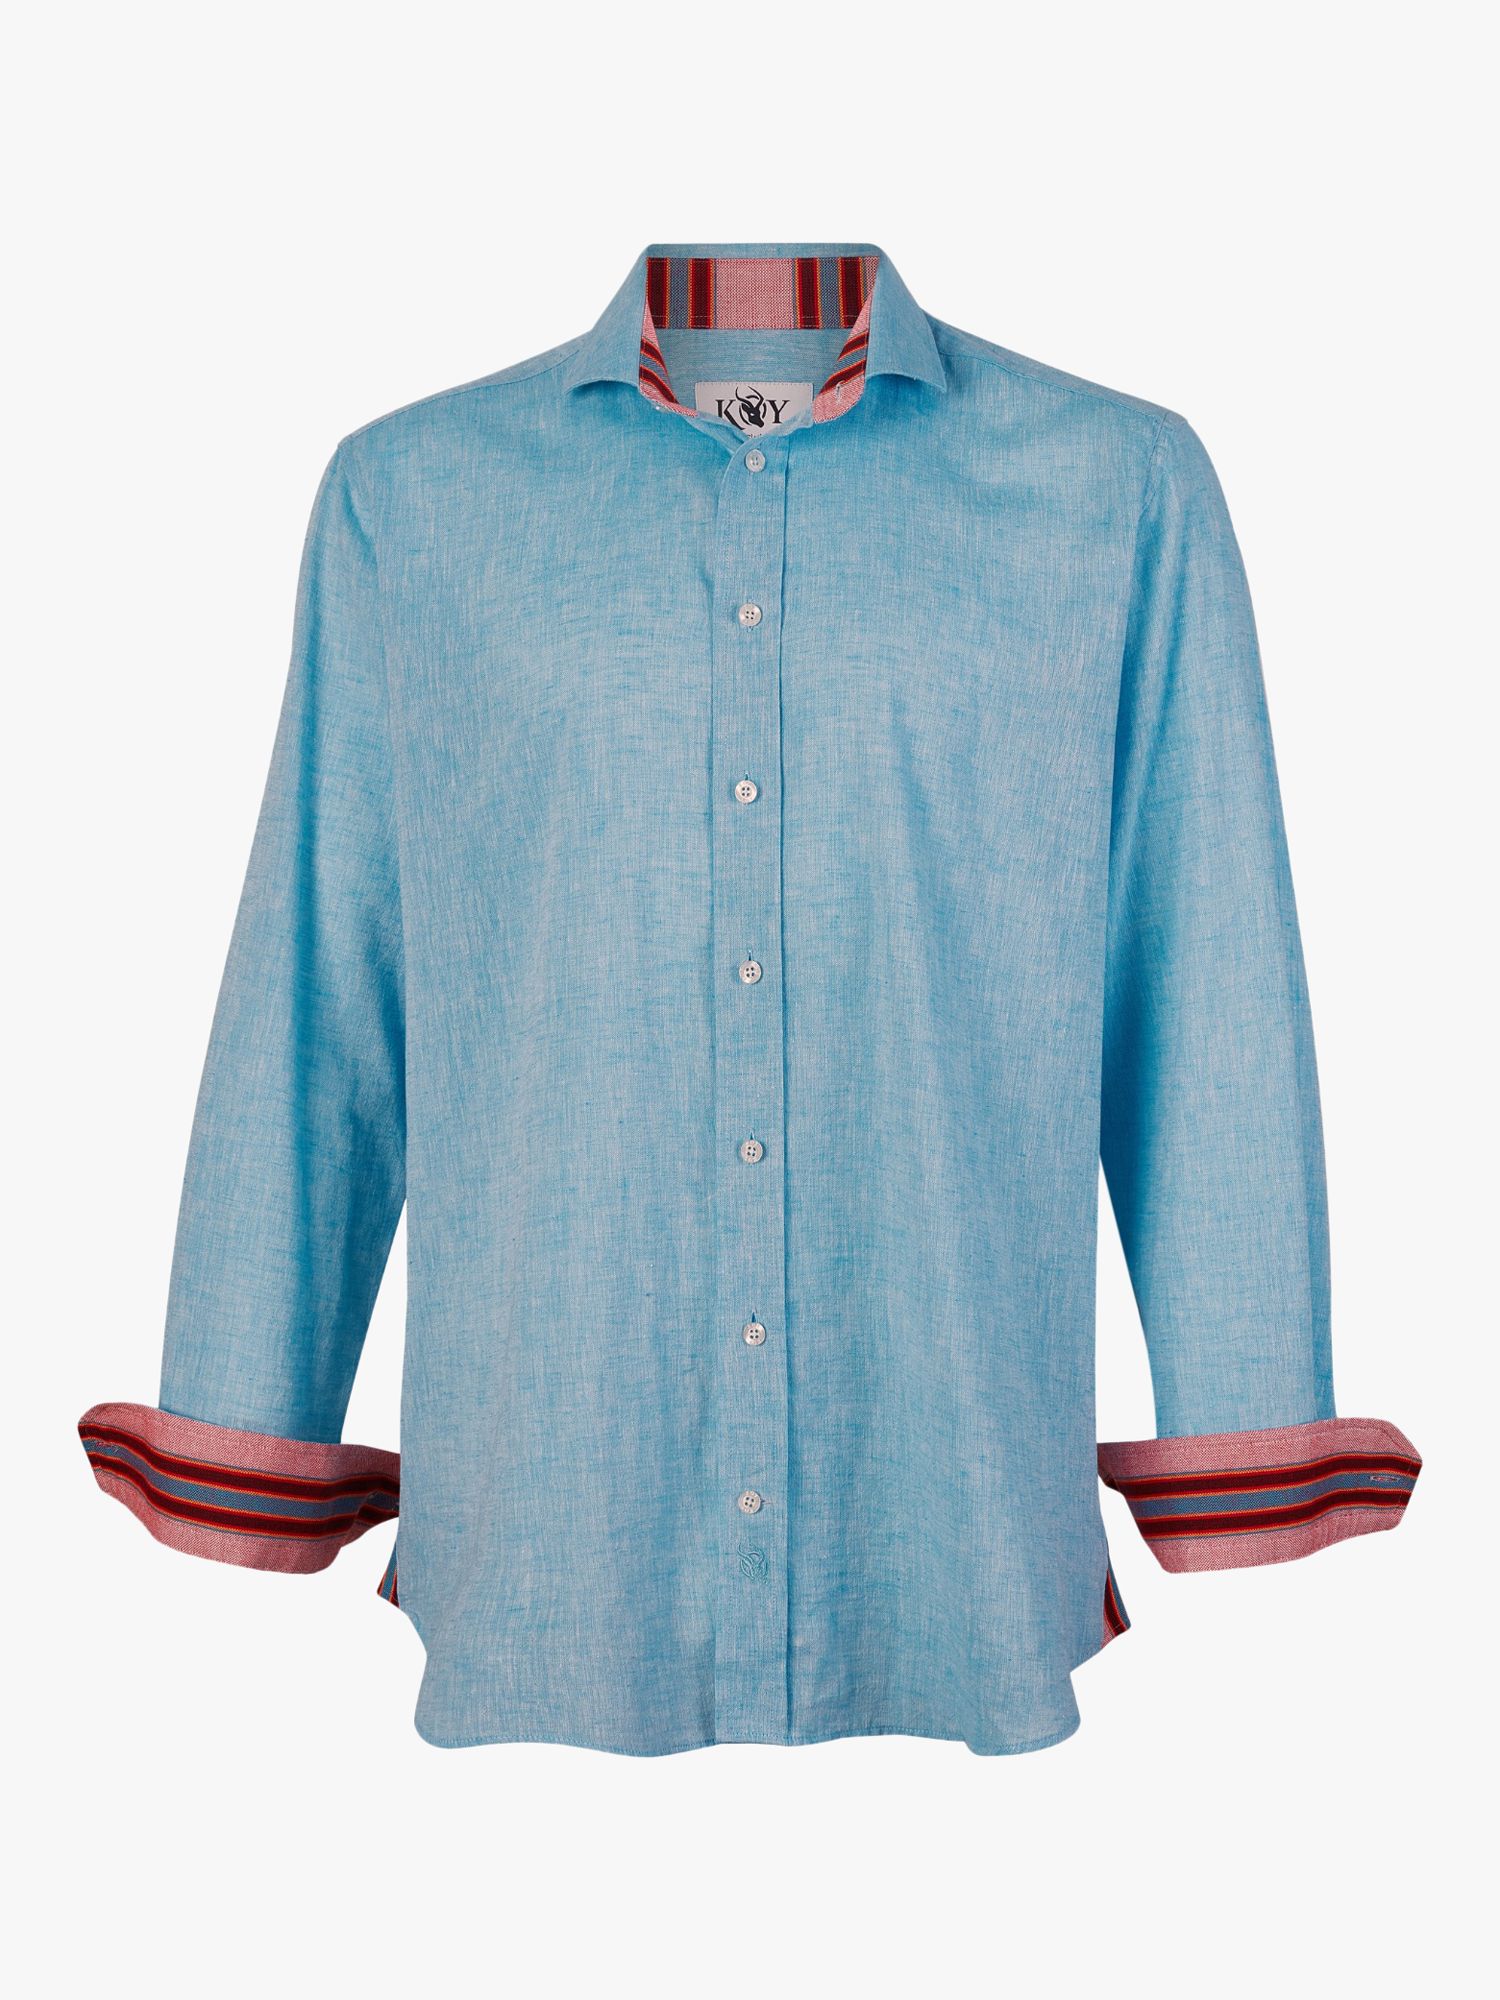 KOY Linen Blend Shirt, Light Blue, S